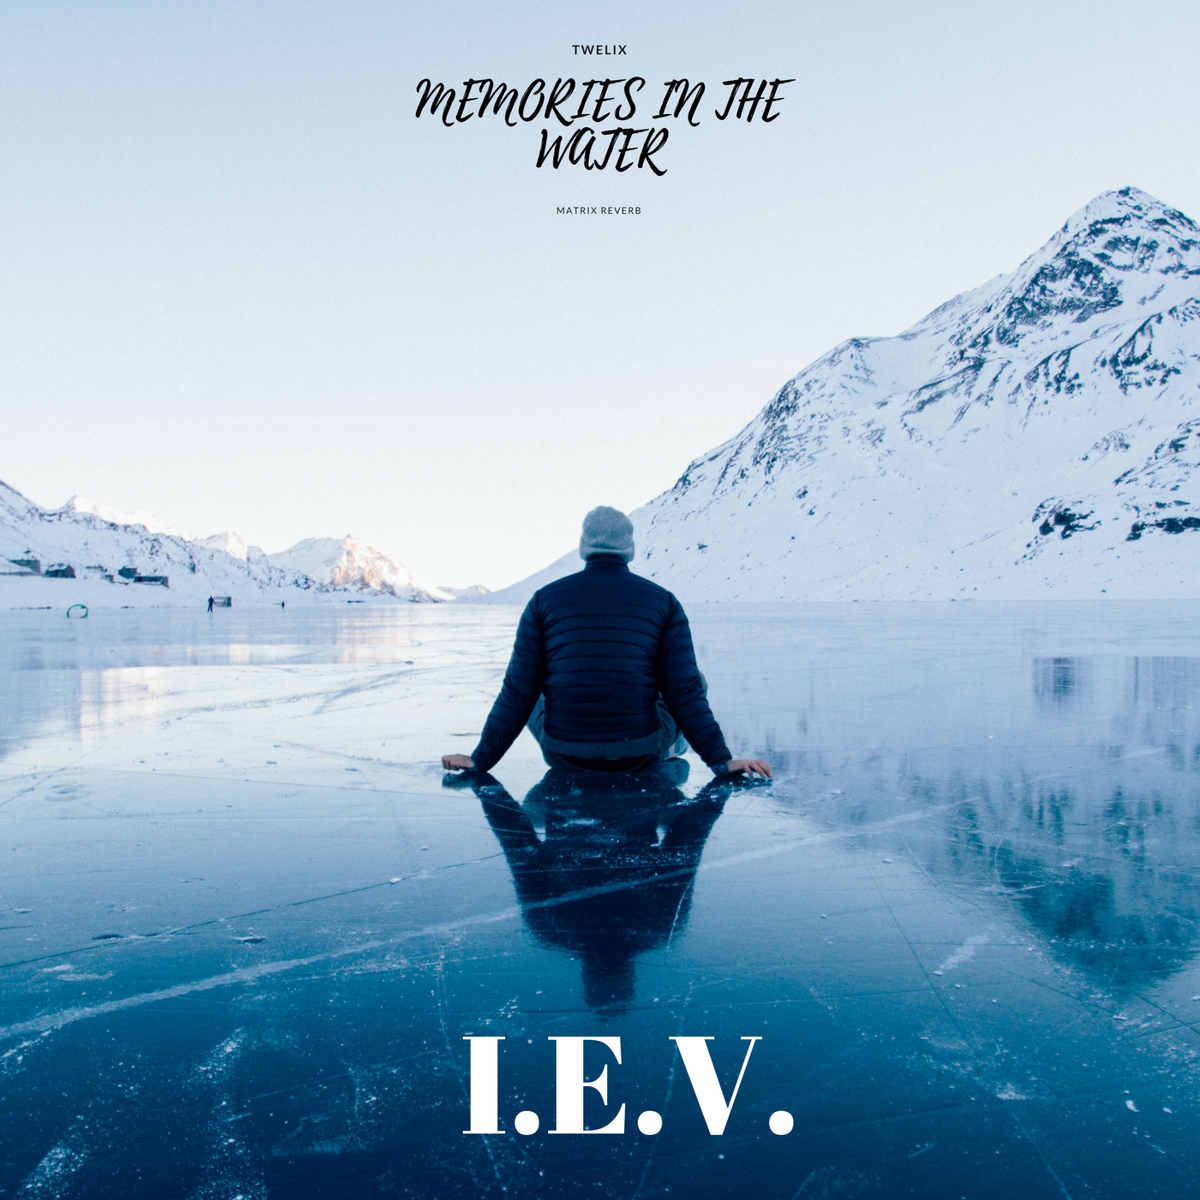 I.E.V. - MEMORIES IN THE WATER - I.E.V.